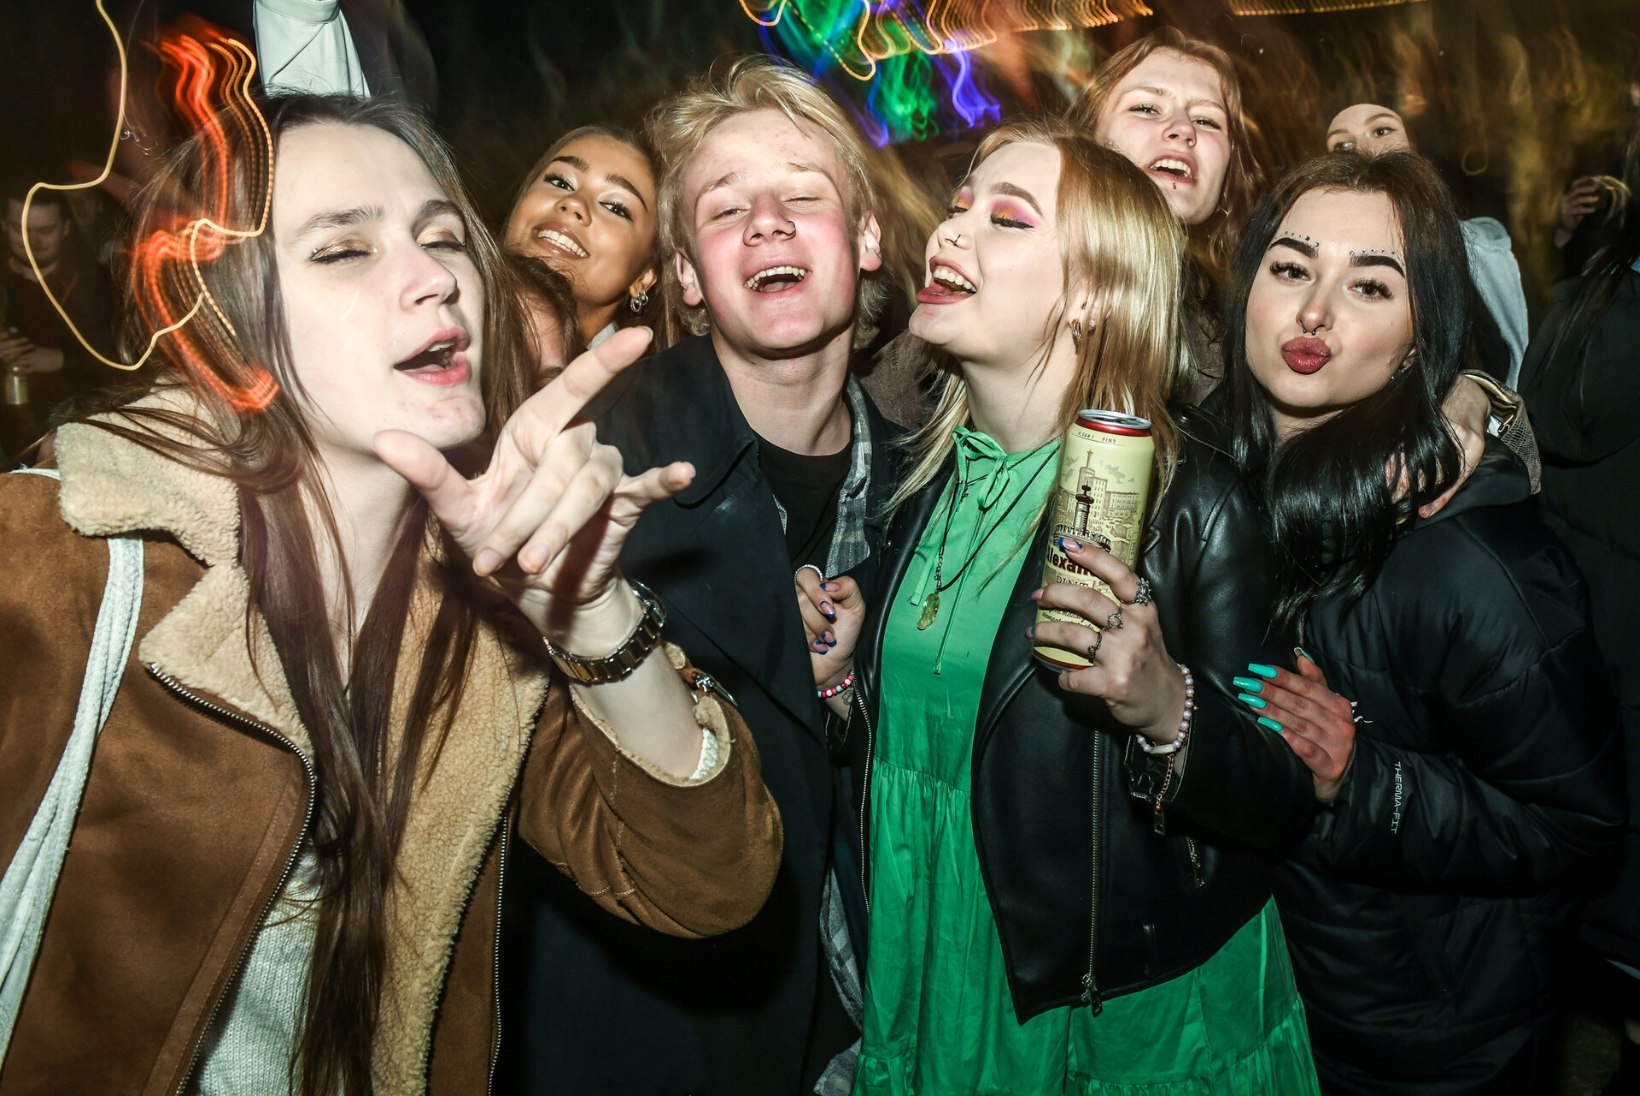 GALERII | TUDENGITAIFUUN: piiranguteta elu nautivad üliõpilased ja asjaarmastajad jorutasid rõõmsalt Tartu öölaulupeol